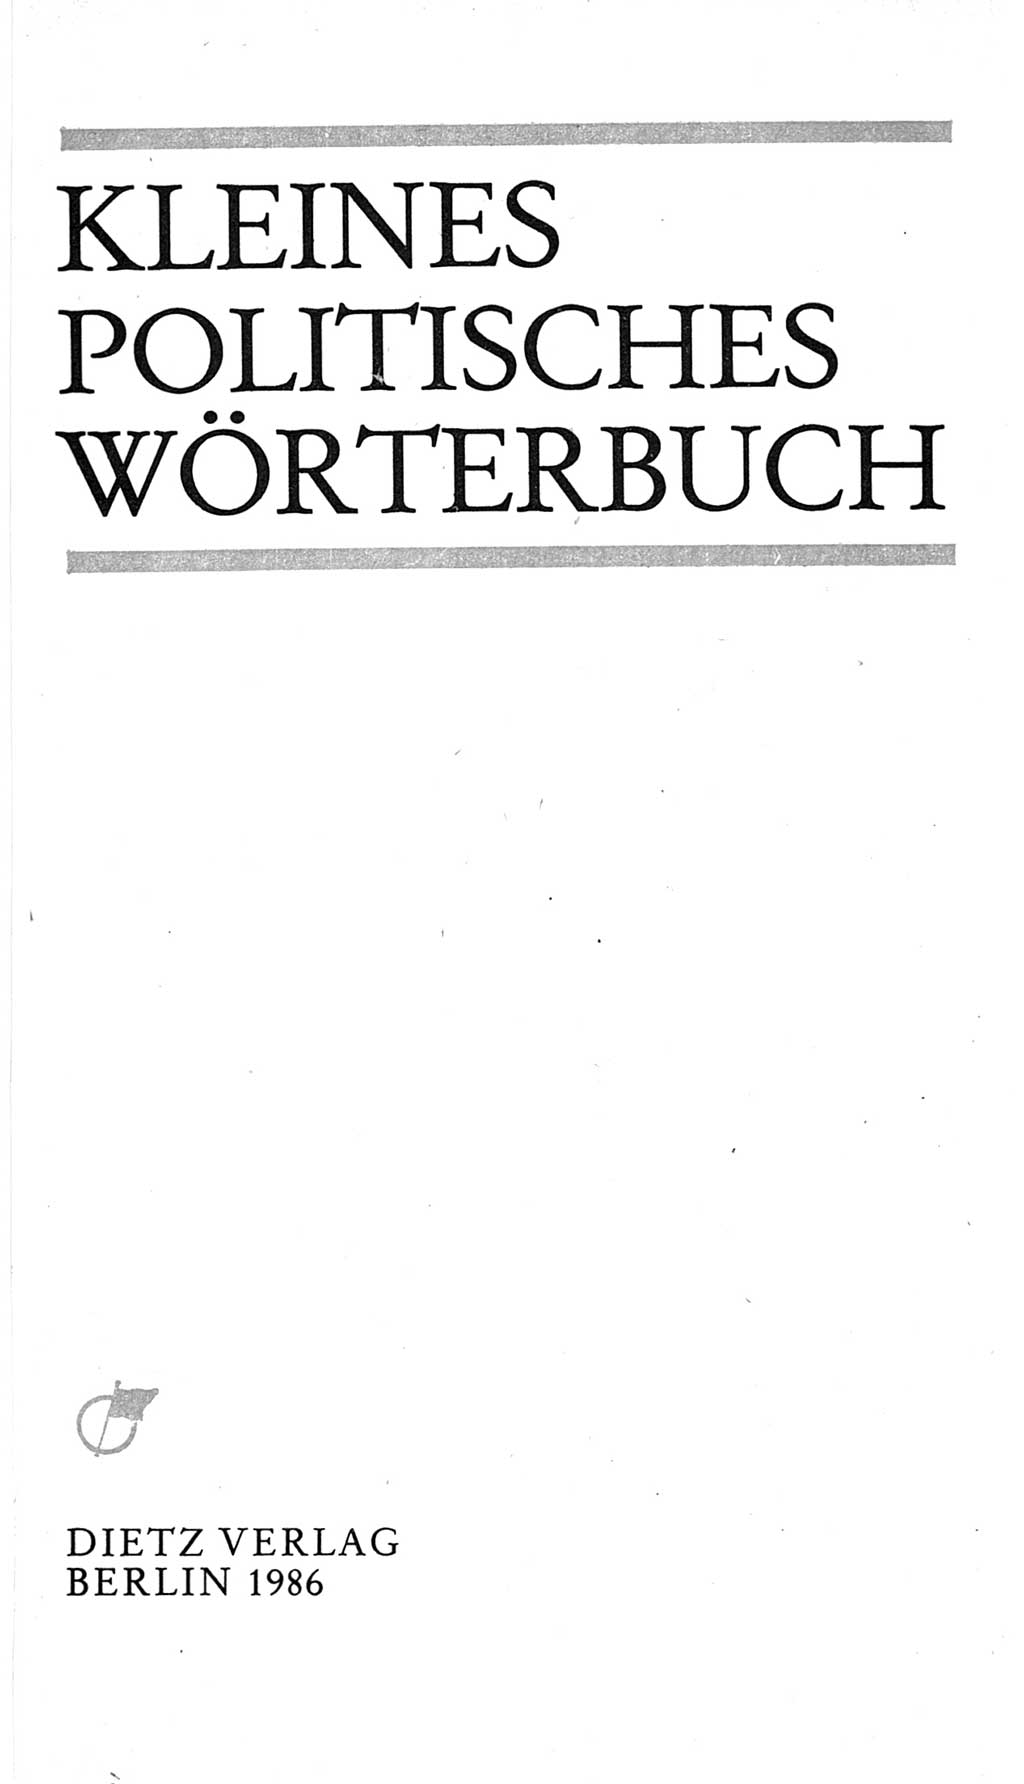 Kleines politisches Wörterbuch [Deutsche Demokratische Republik (DDR)] 1986, Seite 3 (Kl. pol. Wb. DDR 1986, S. 3)